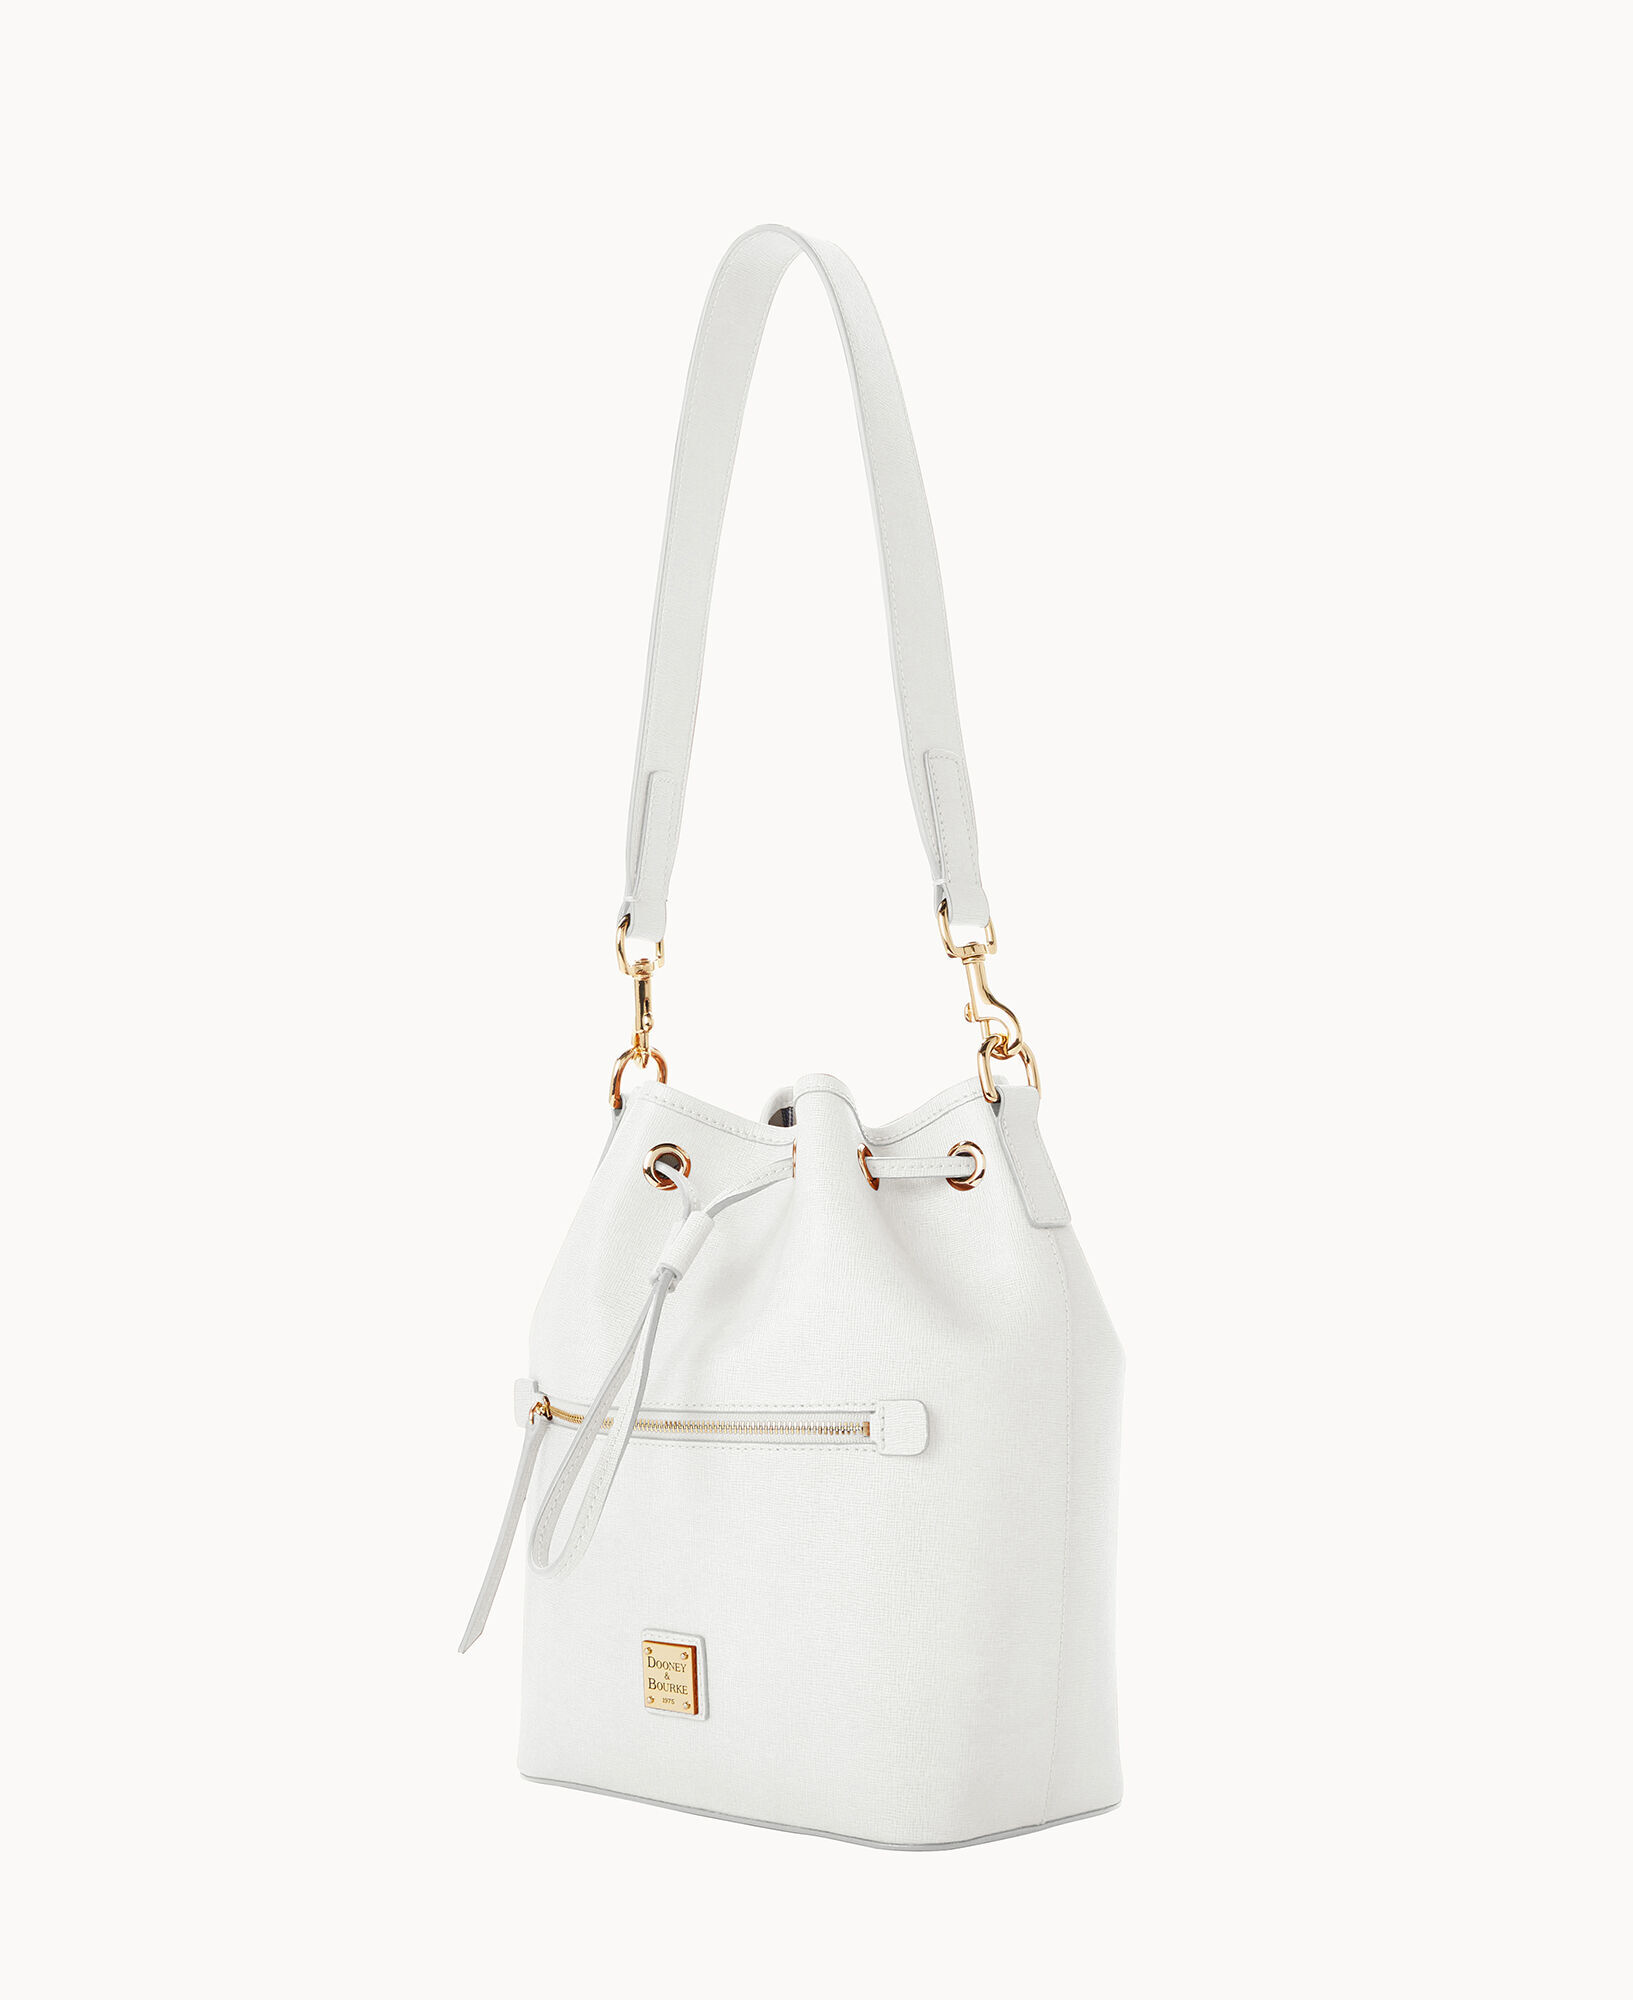 Dooney & Bourke Handbag, Saffiano Drawstring - Amber: Handbags